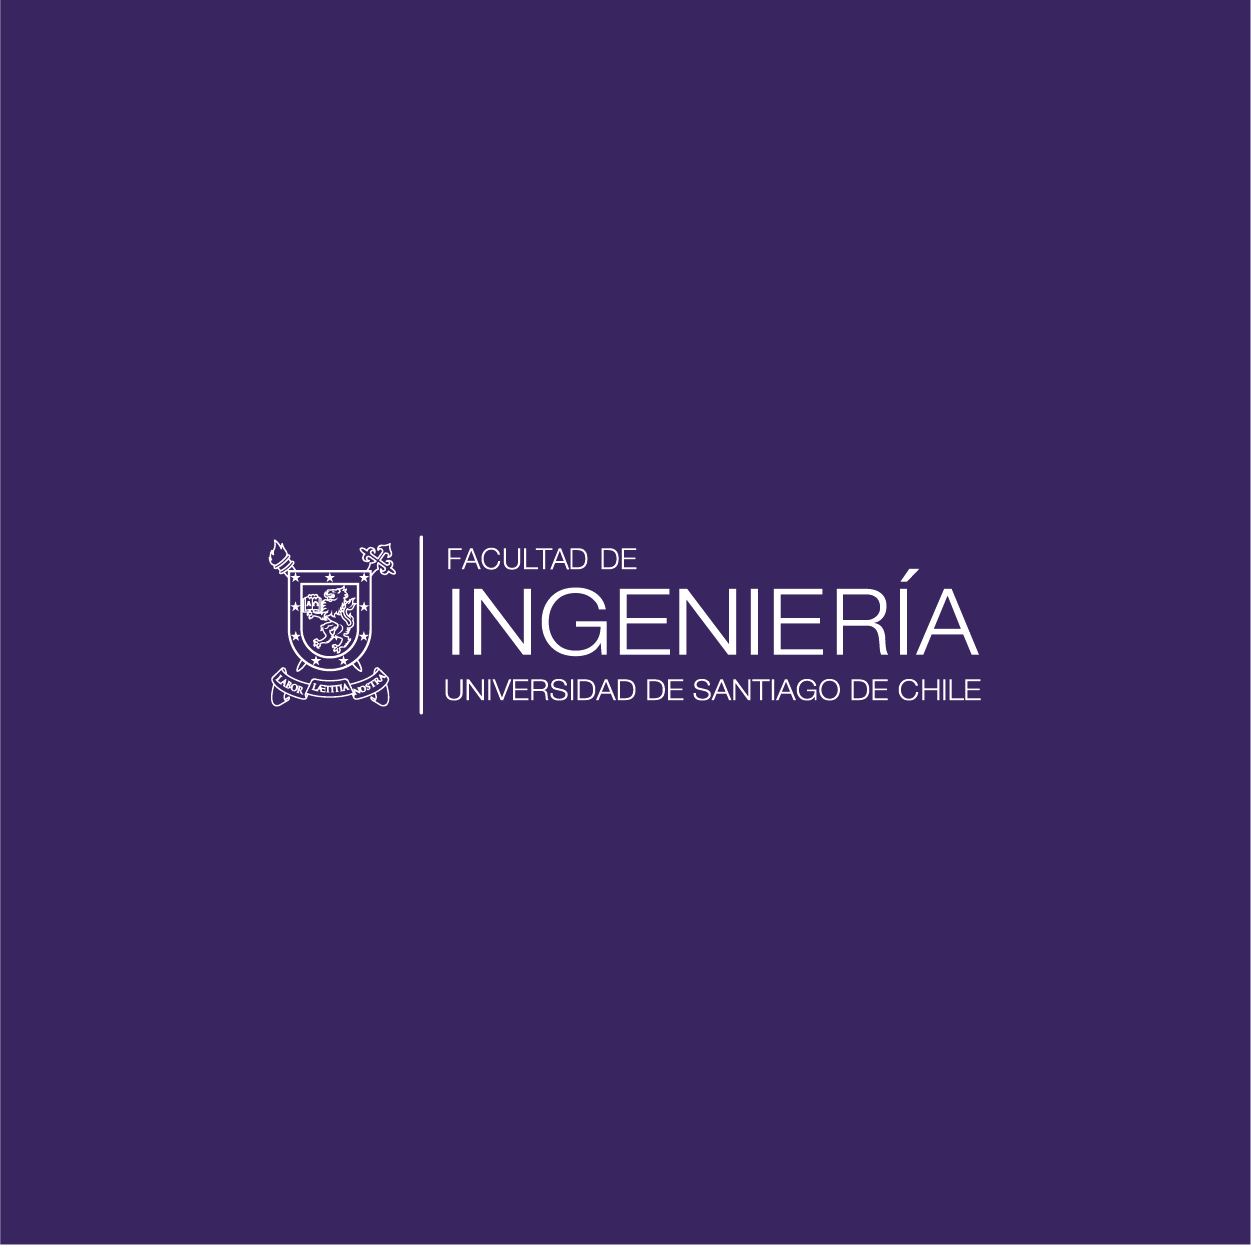 Logo de la Facultad de Ingenieria de la Universidad de Santiago de Chile, institución para la que se realizará esl wrokshop "Habilidades relacionales para las nuevas masculinidades".